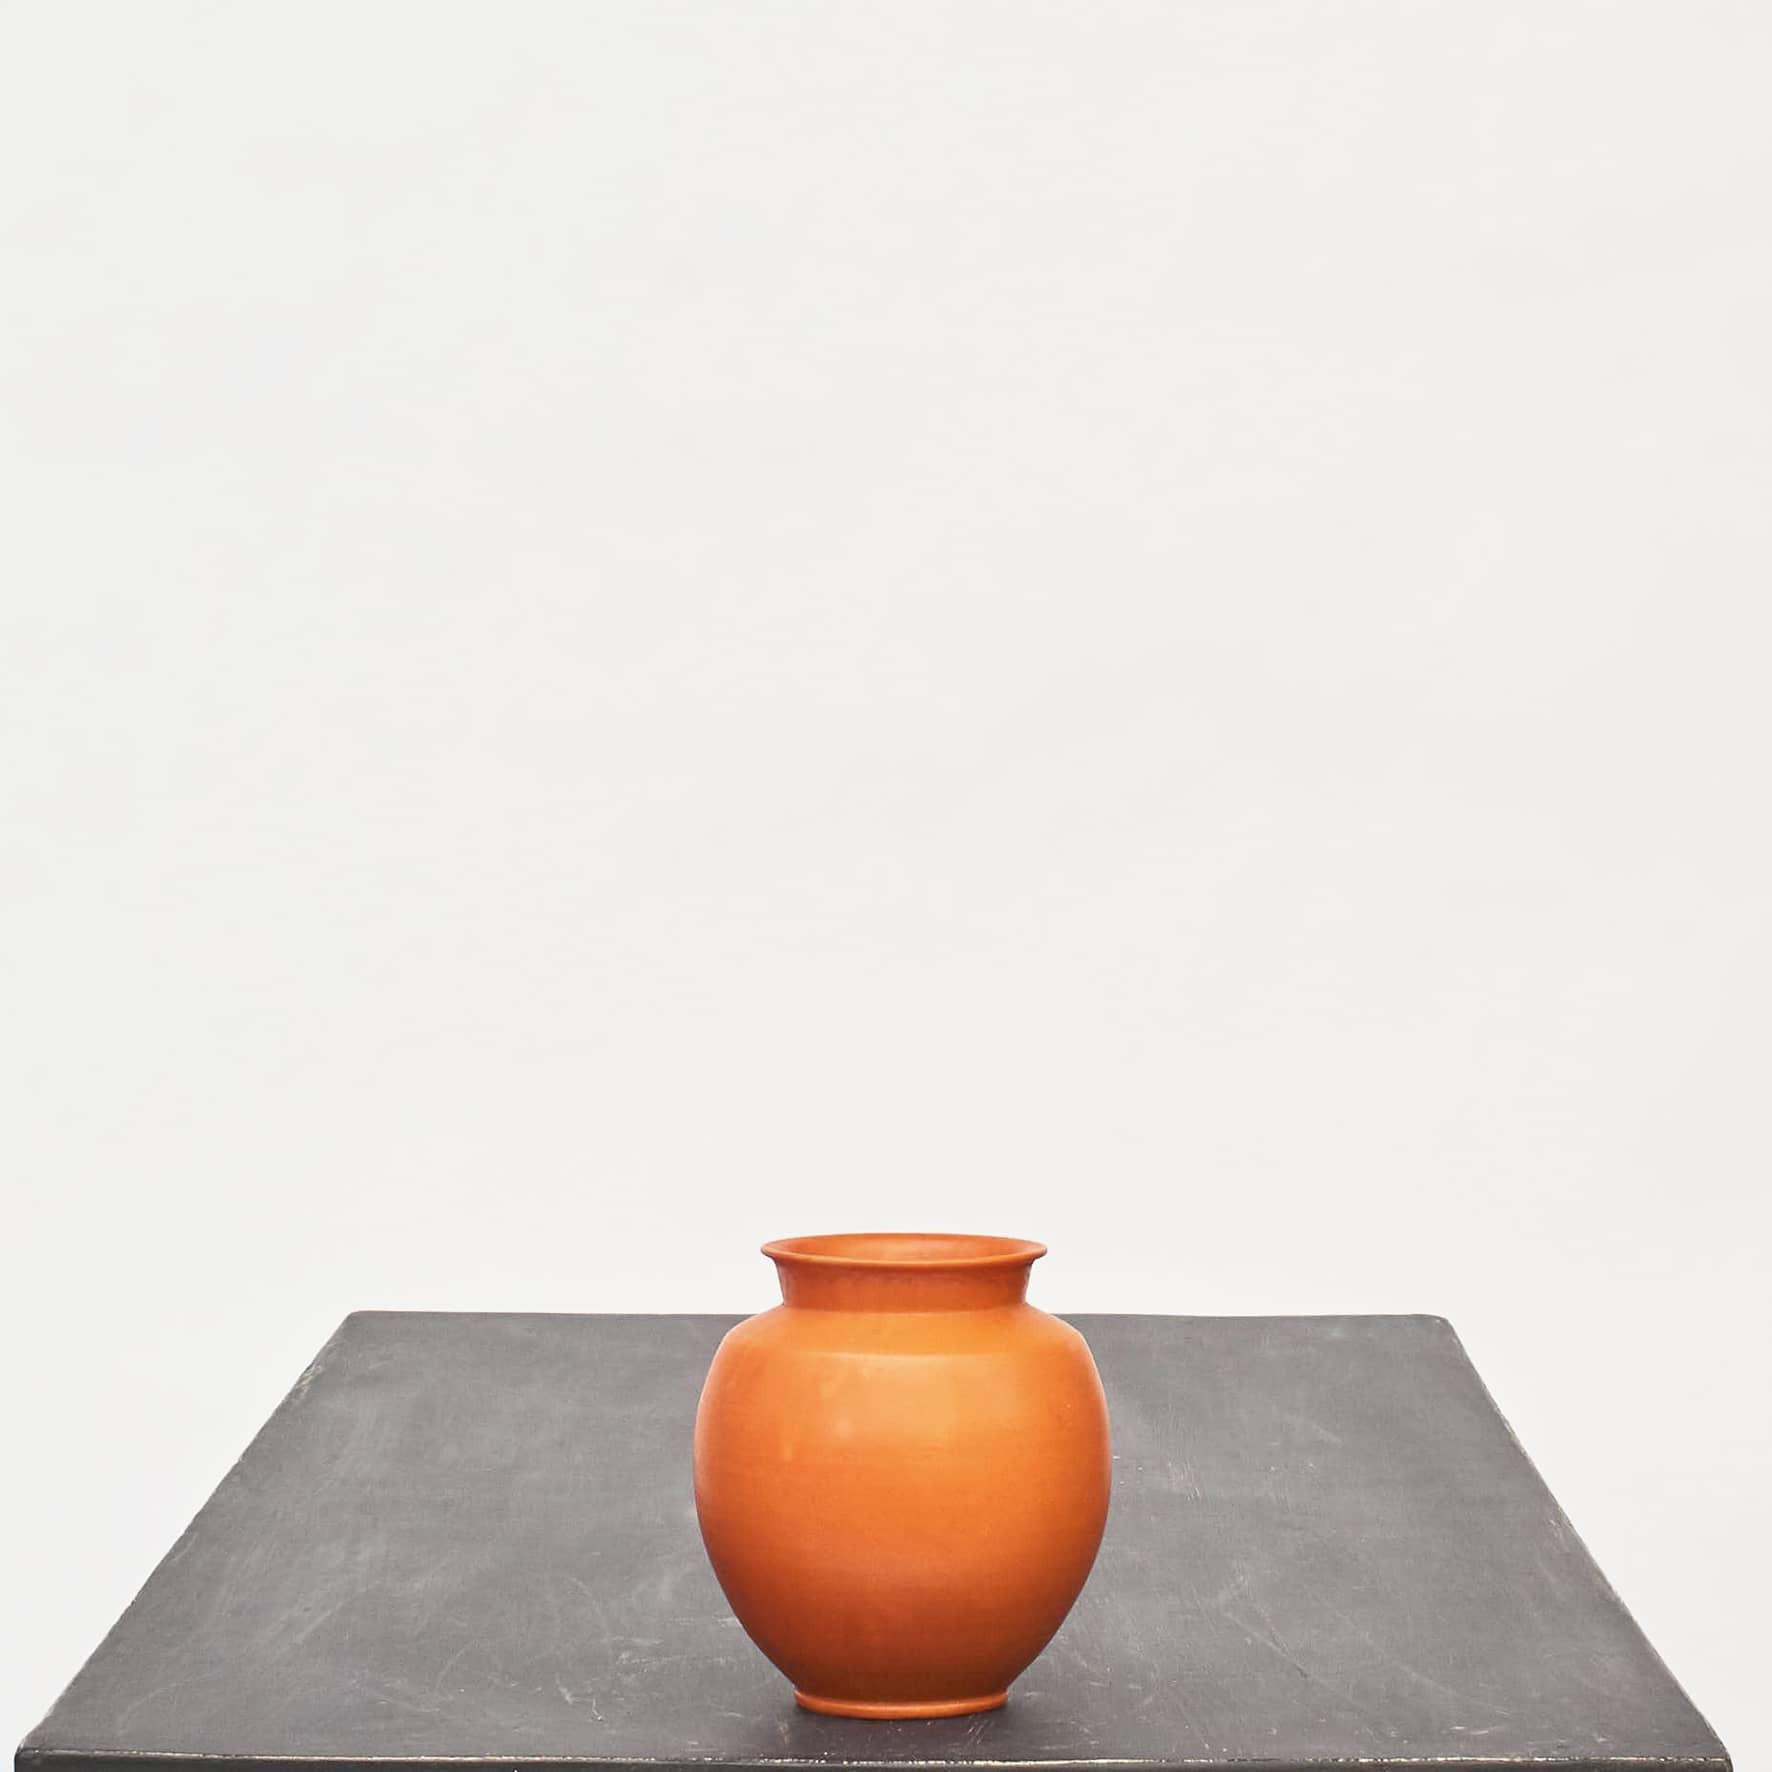 Kähler ceramic vase with orange glaze.
Signed 